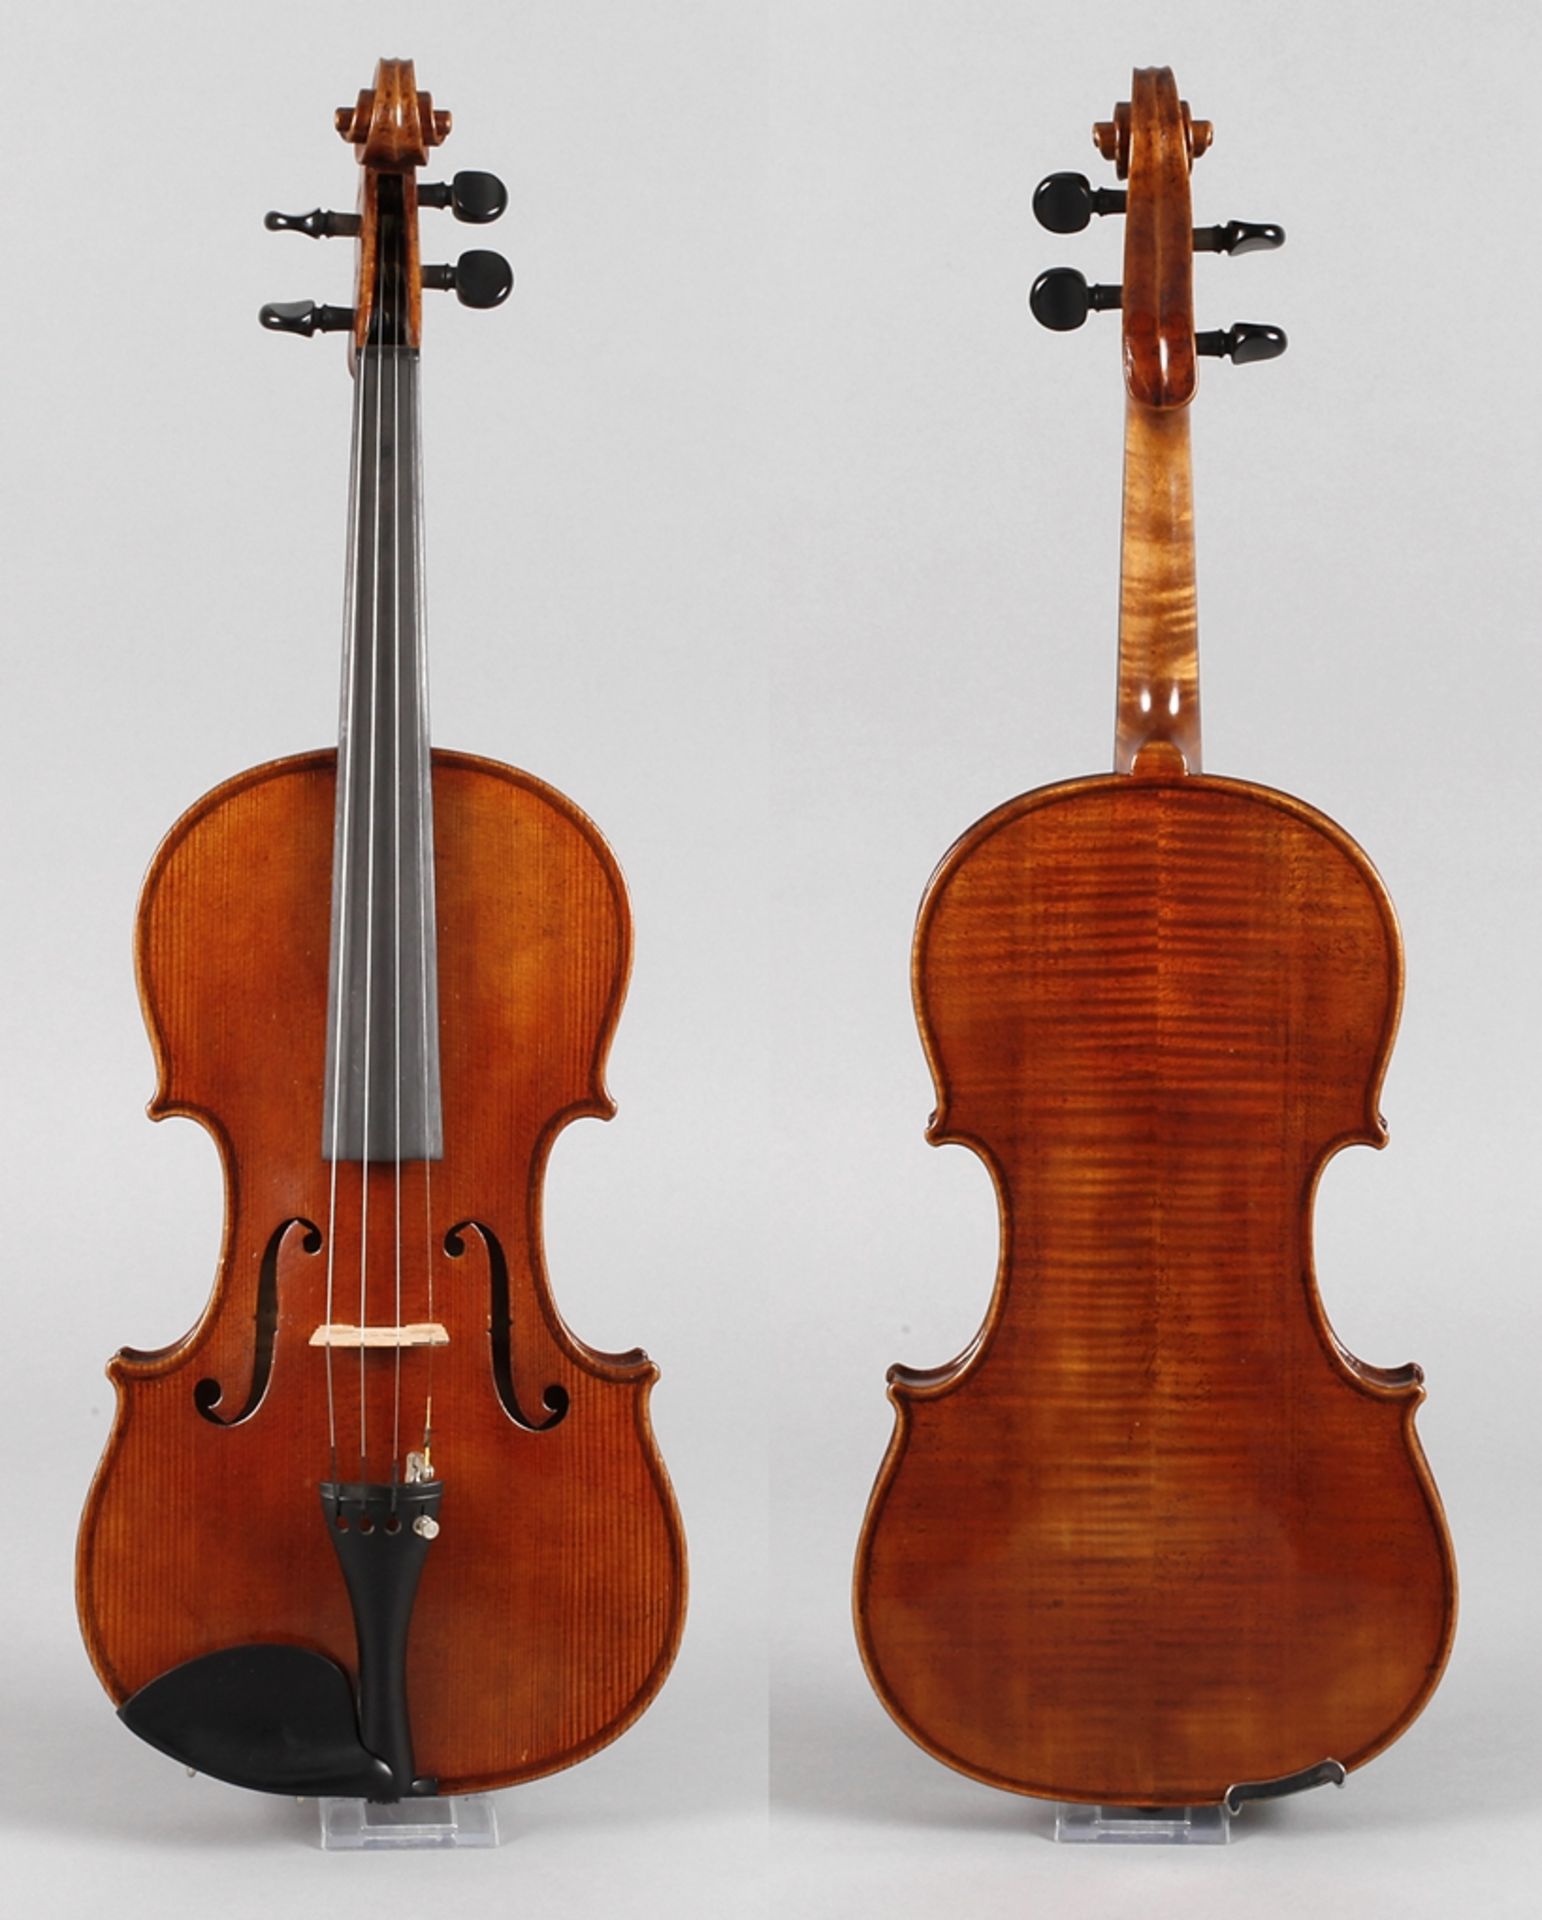 Violine1930er Jahre, ohne Klebezettel, geteilter, gleichmäßig geflammter Boden im gelblichen Lack,